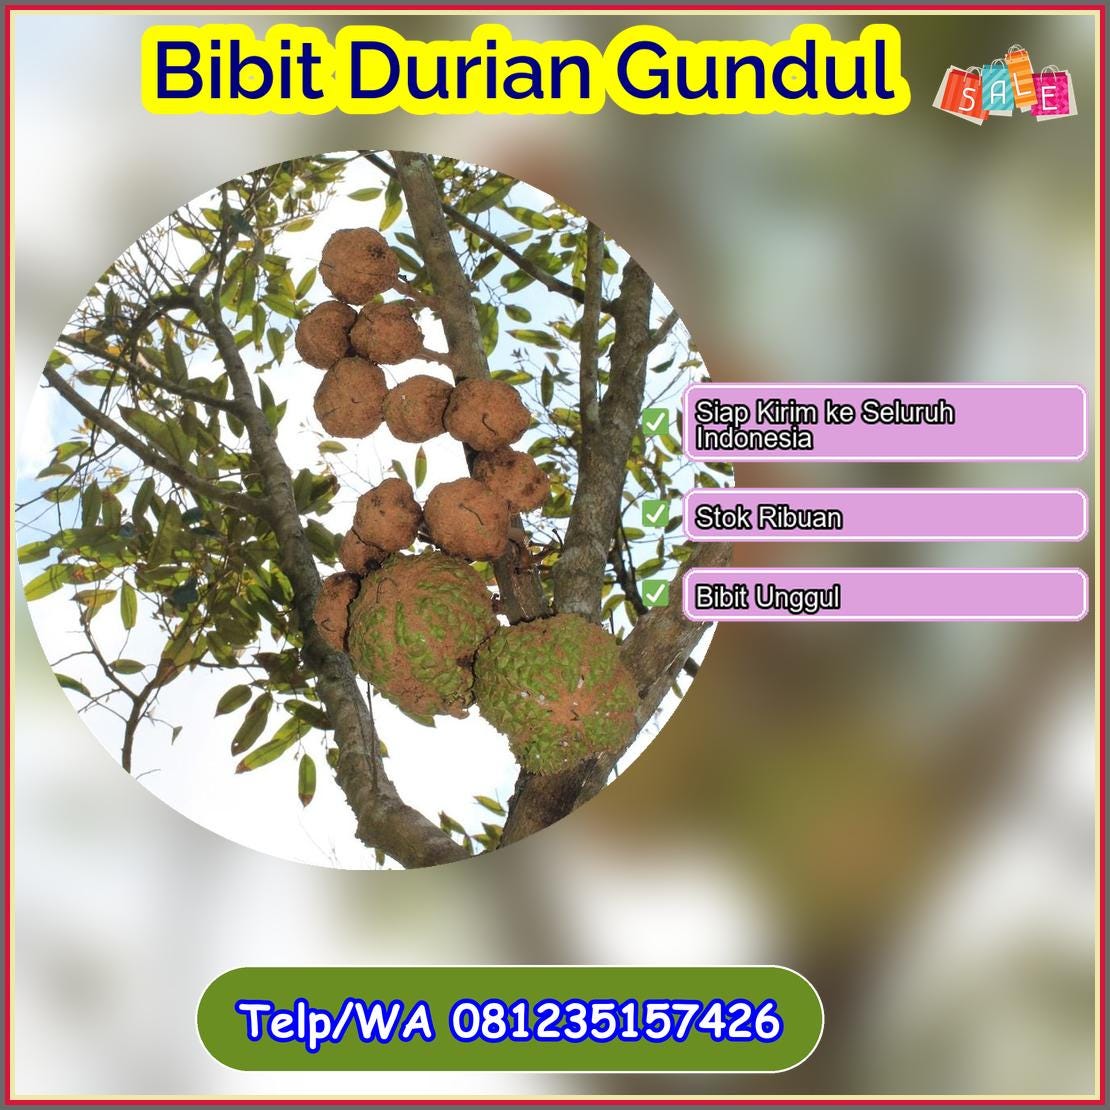 Pusat Pembibitan Bibit Durian Gundul Poso